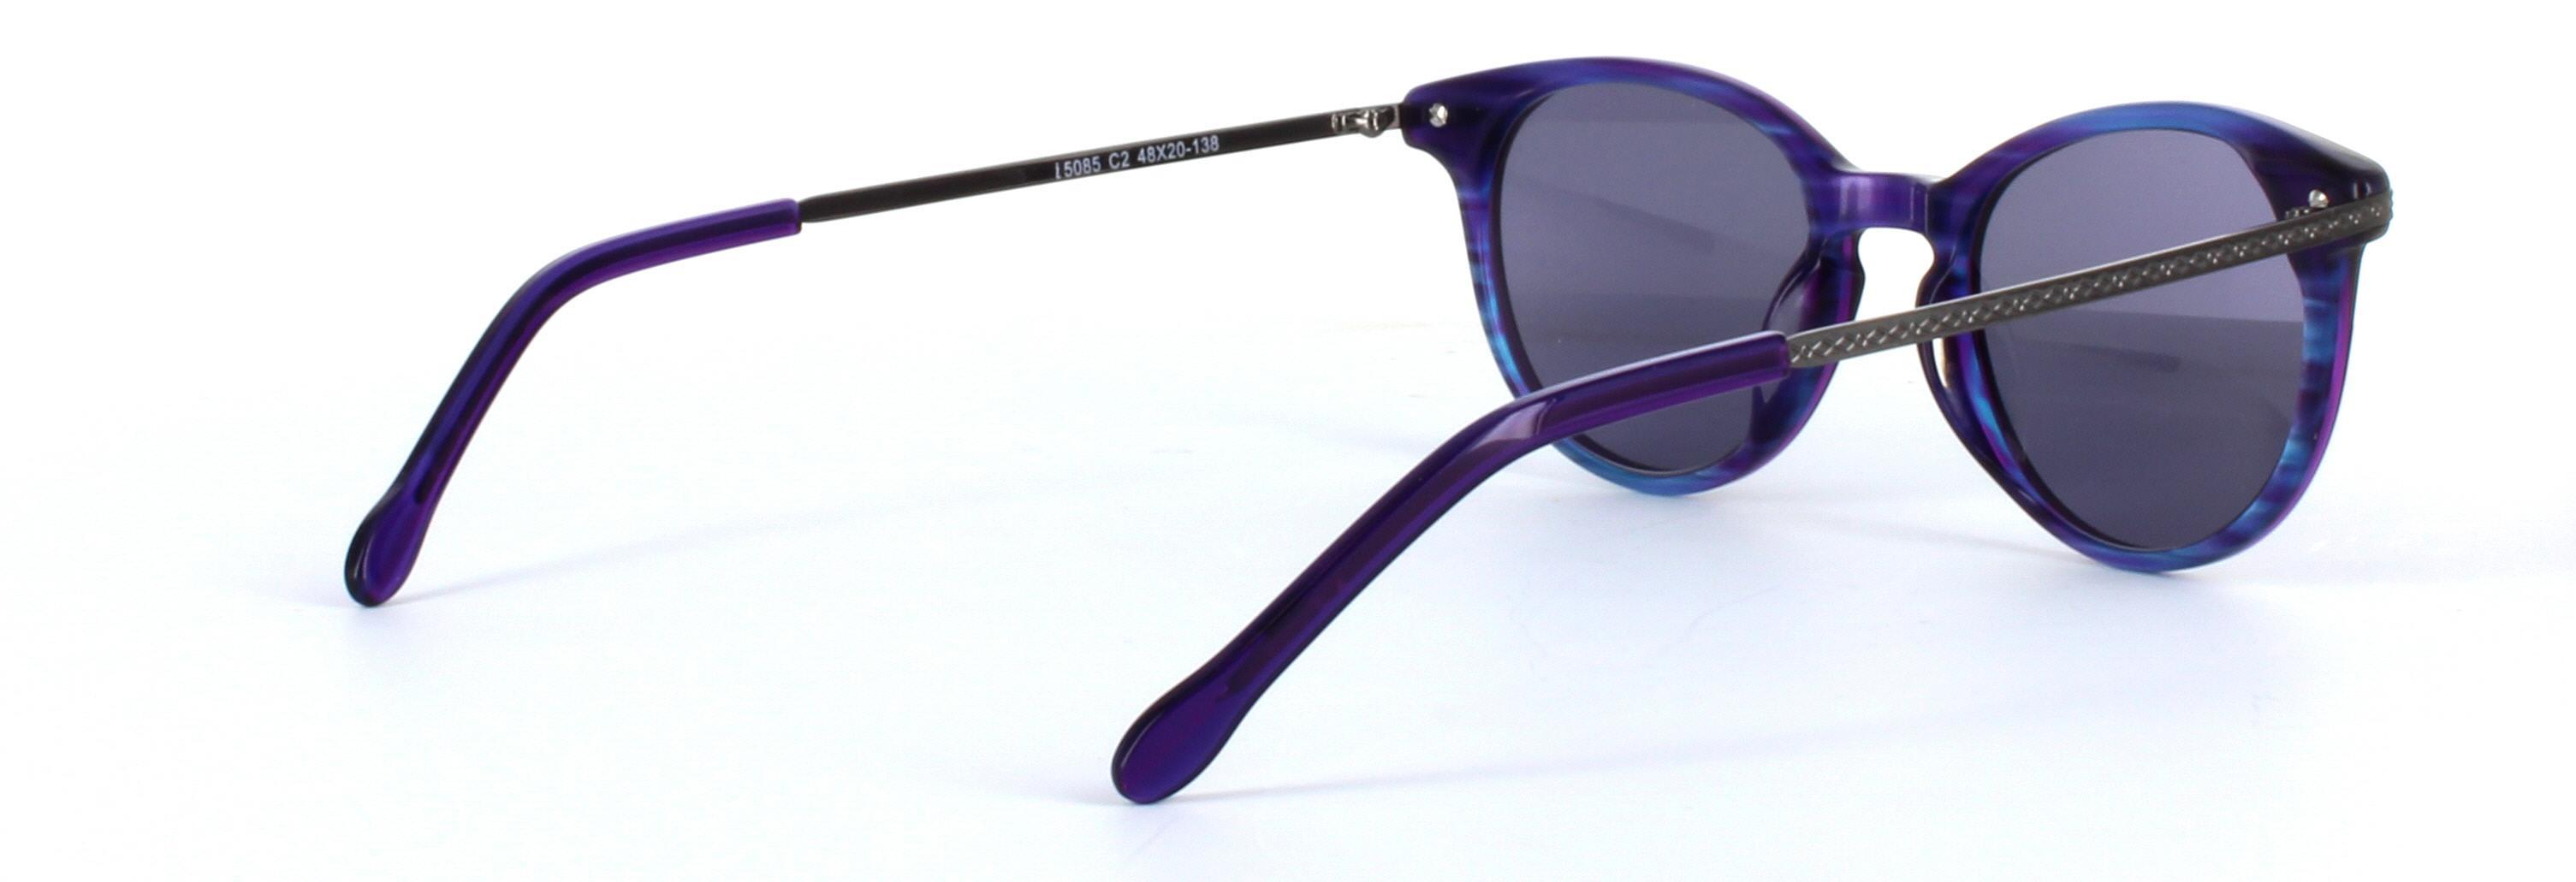 Amanda Purple Full Rim Round Acetate Sunglasses - Image View 4